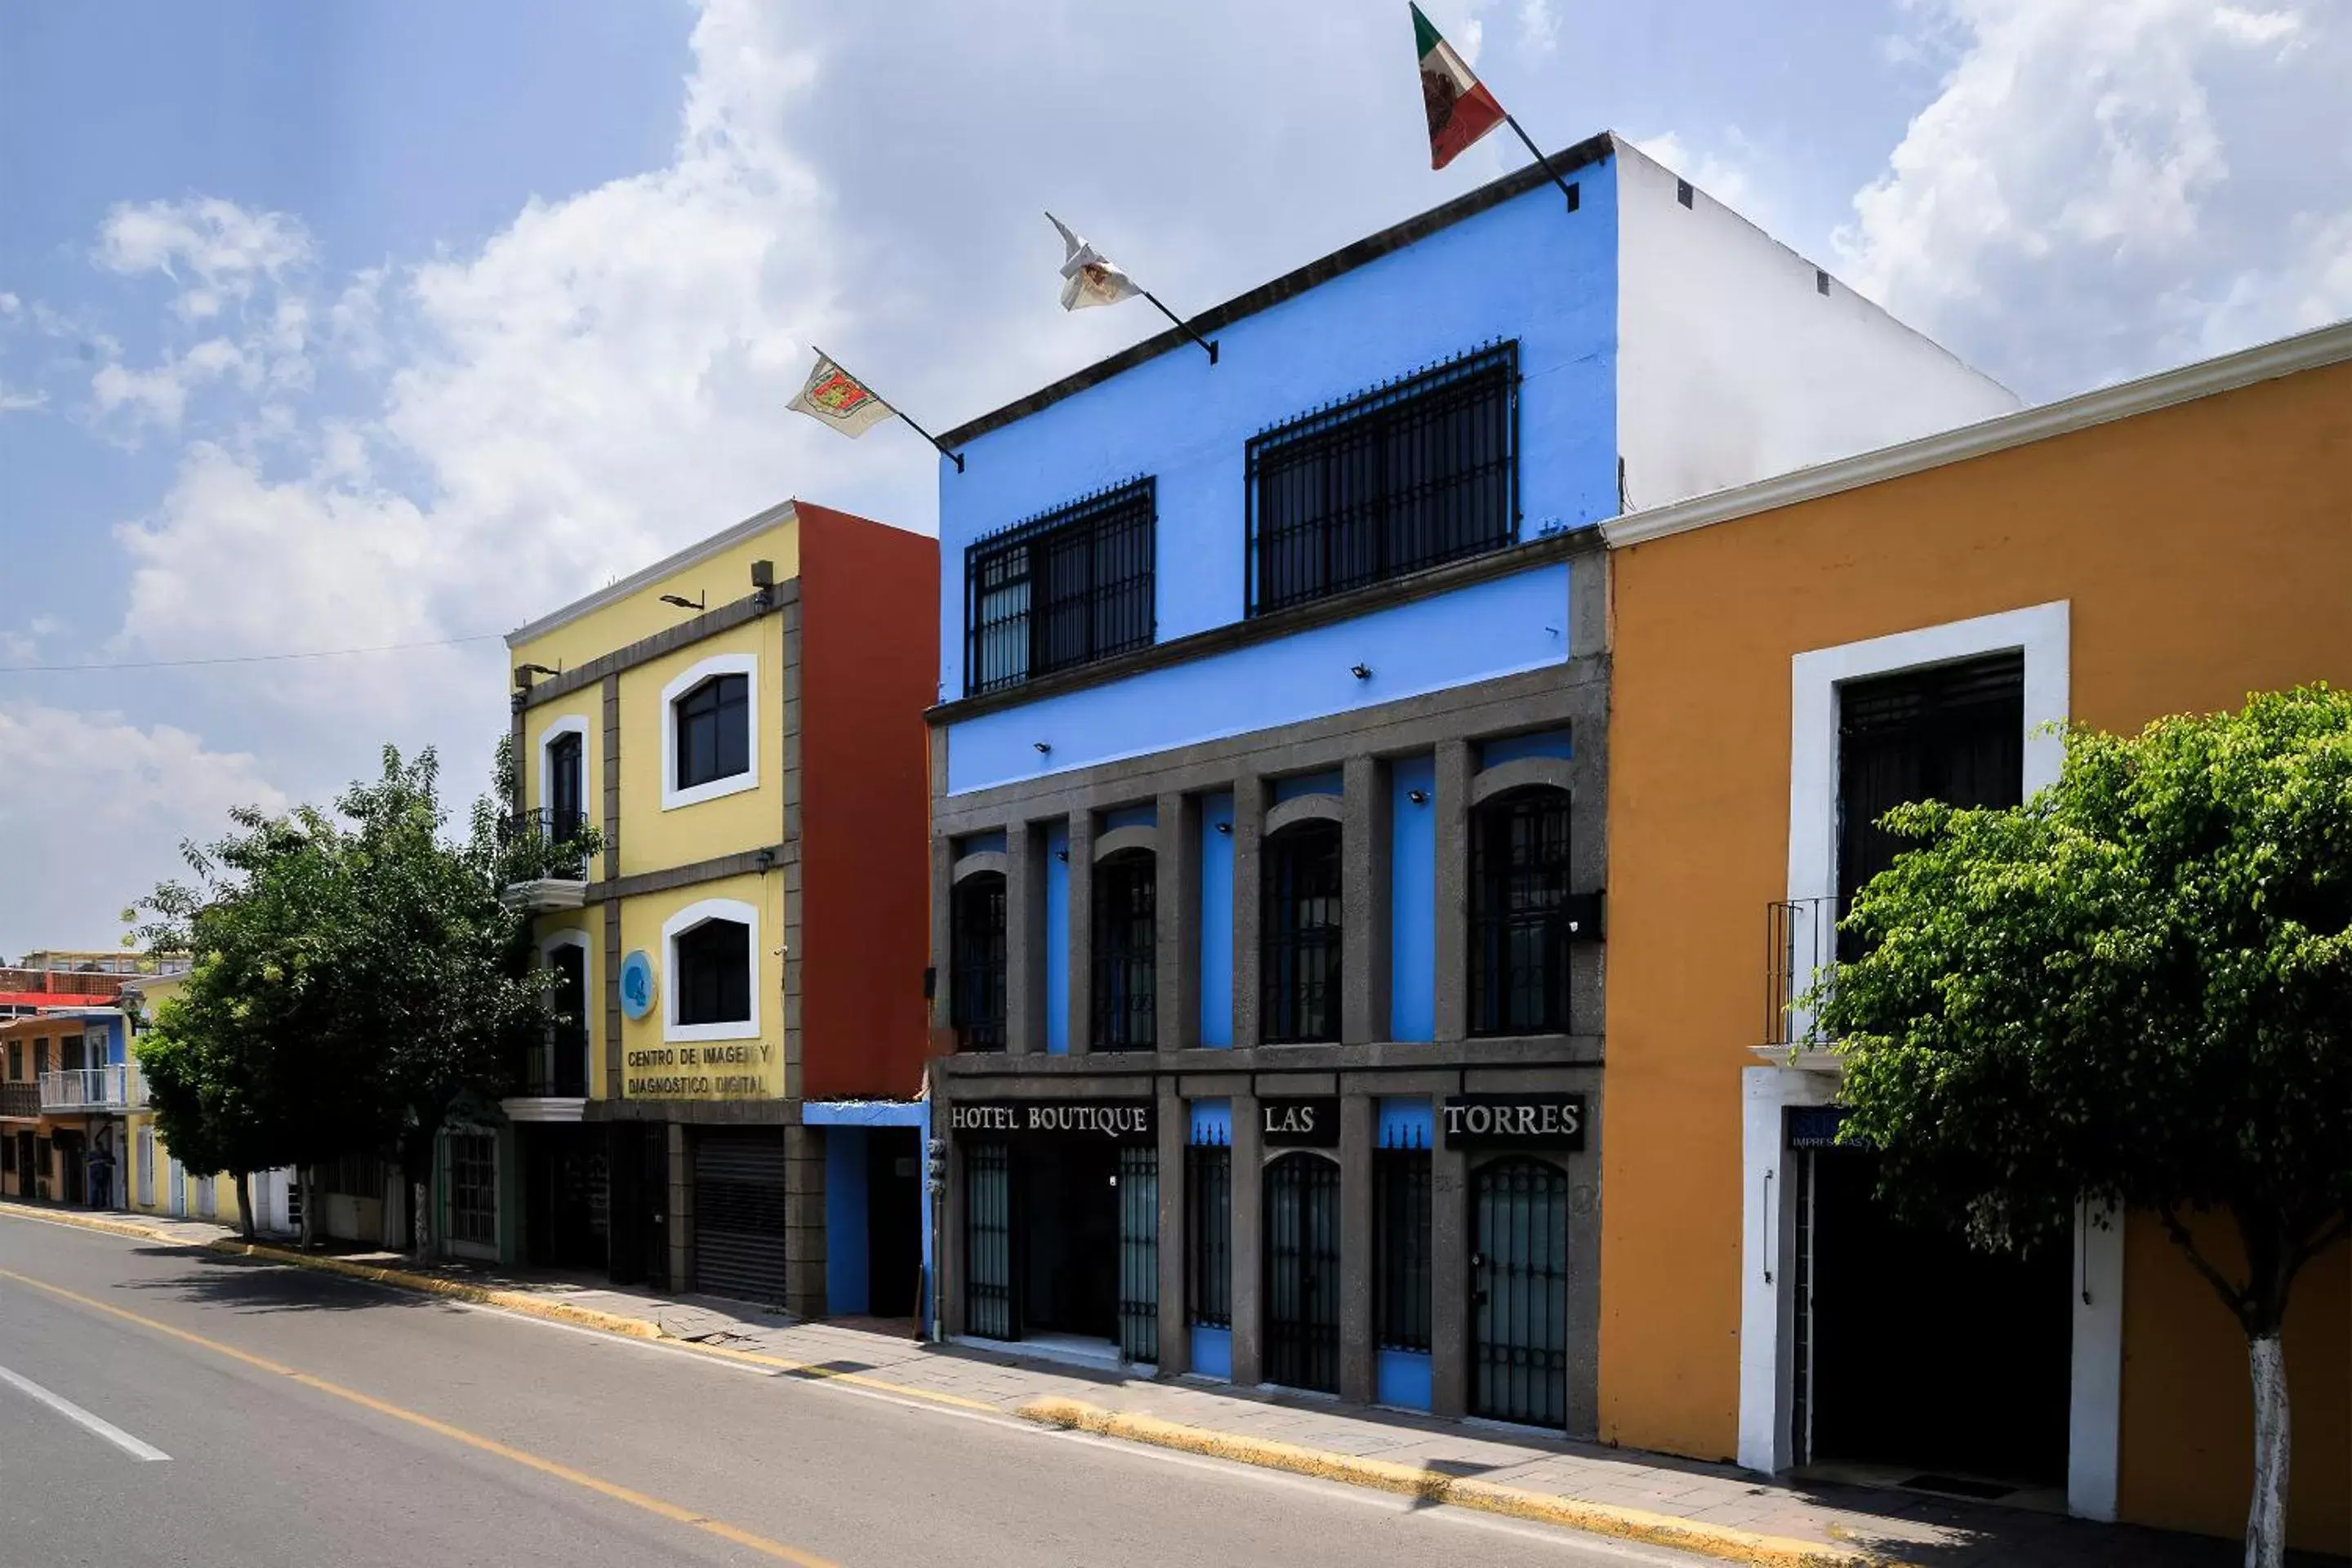 Facade/entrance, Property Building in Capital O Hotel Boutique Las Torres